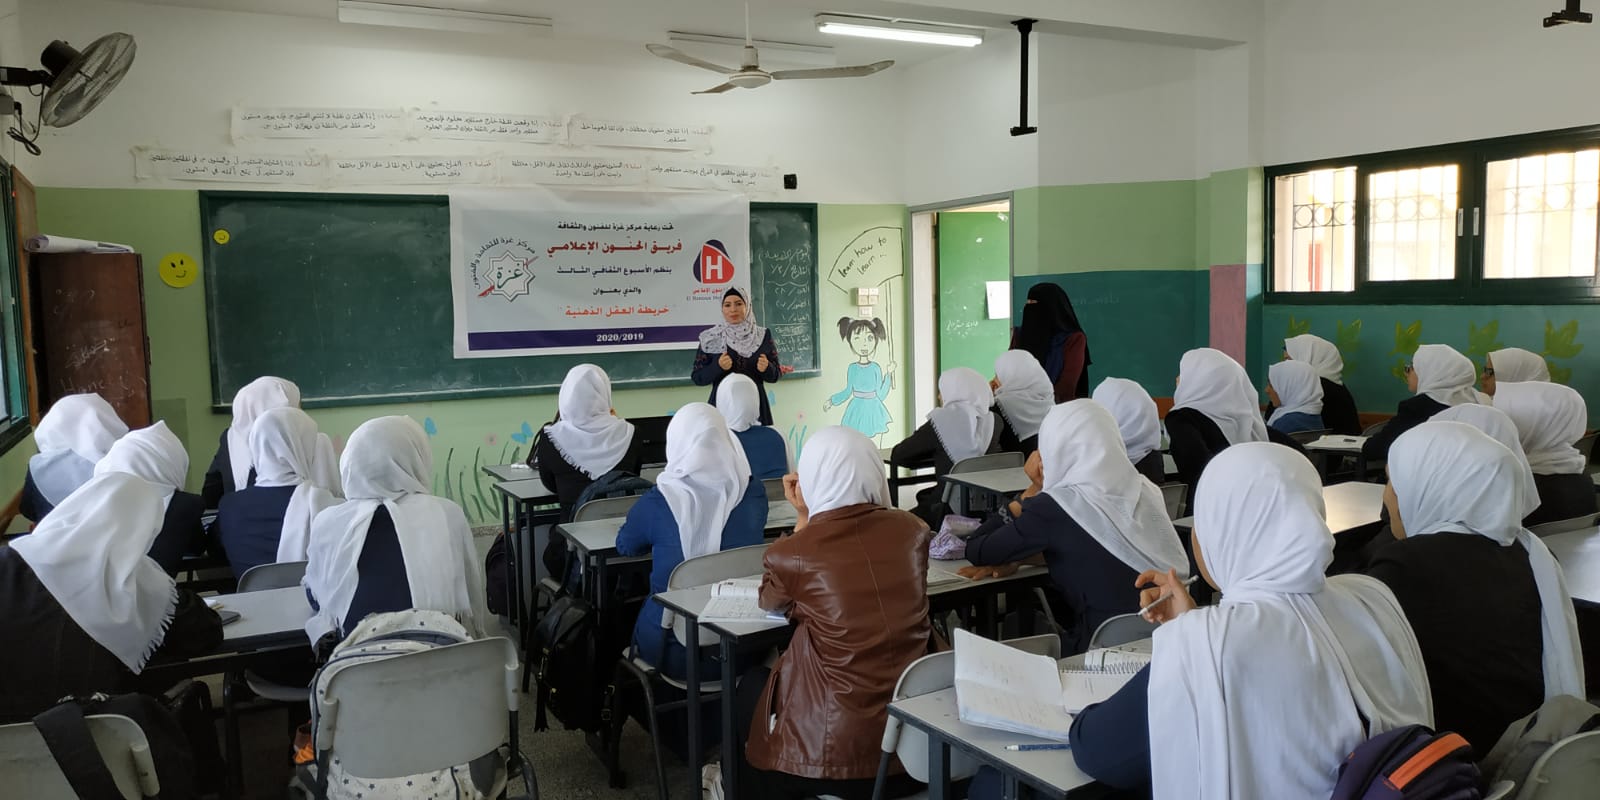 التعليم : هناك توجهاً لعودة التعليم الوجاهي بشكل كامل في غزة 